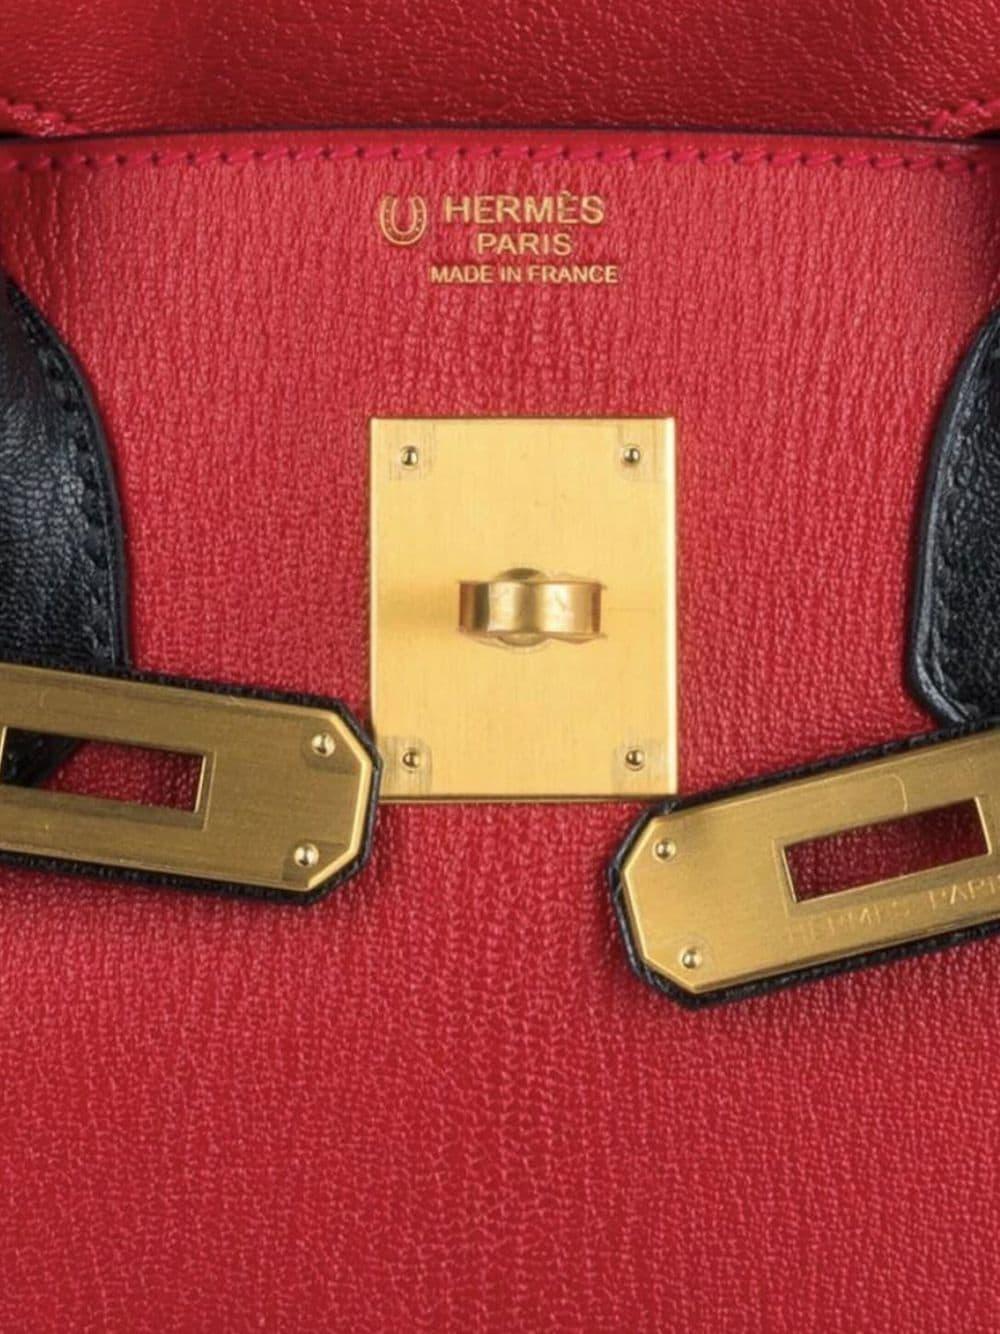 Hermes Birkin 30 Bag